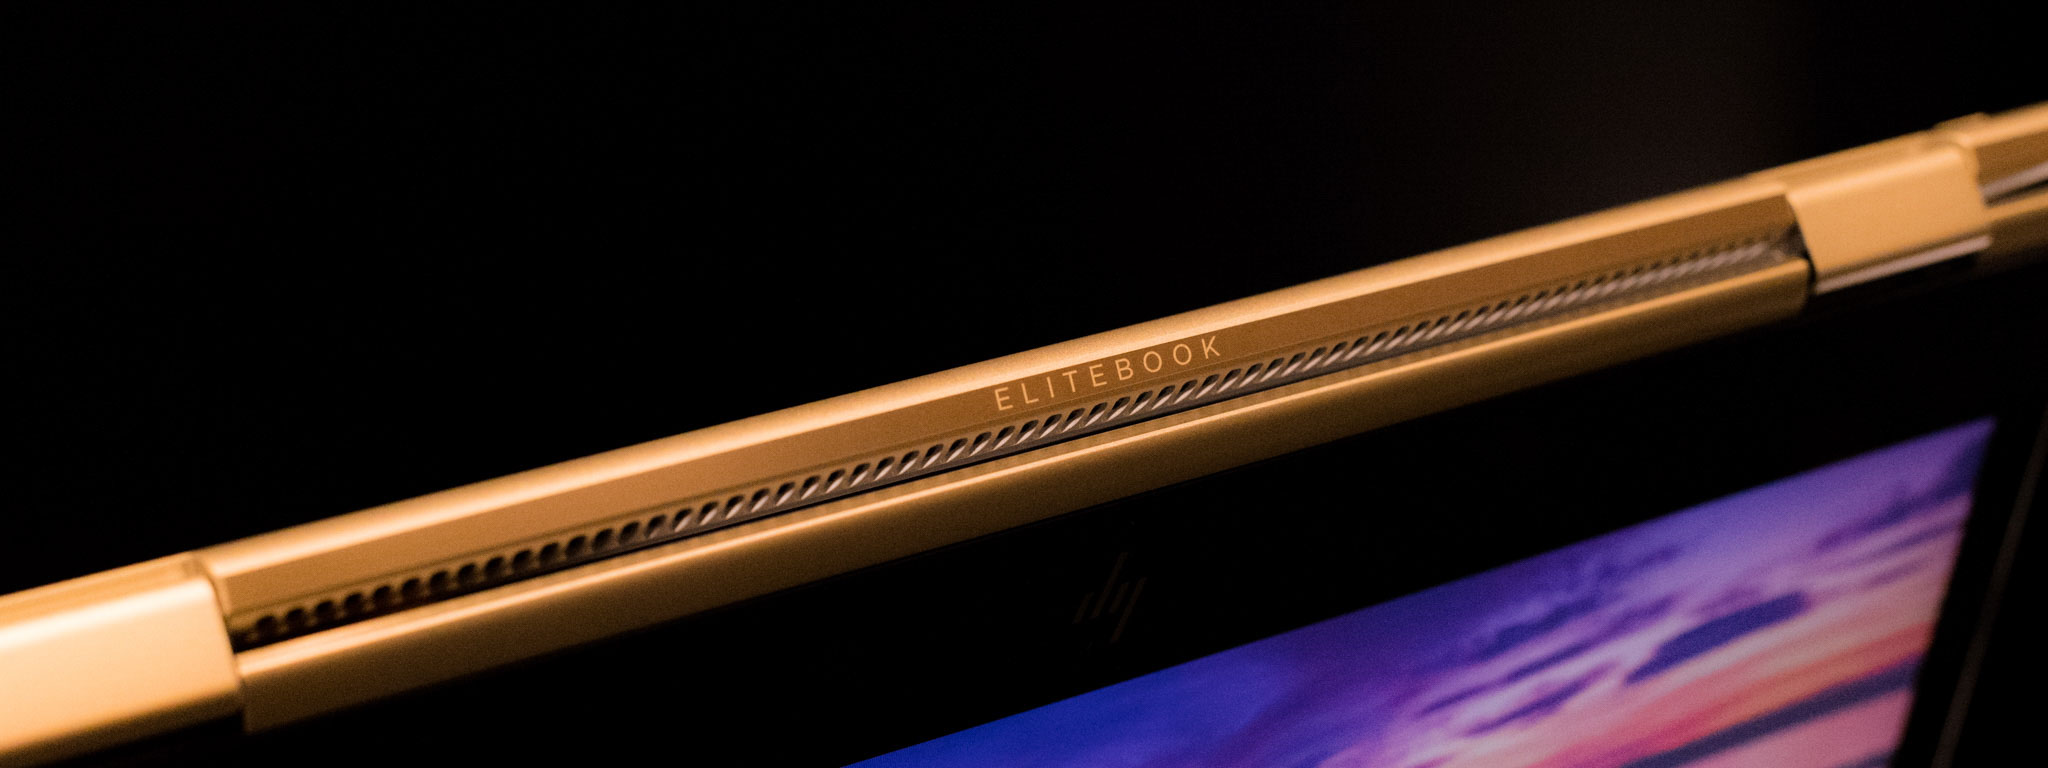 HP ra mắt Spectre x360 - Laptop xoay 360 độ, mỏng nhẹ nhất thế giới